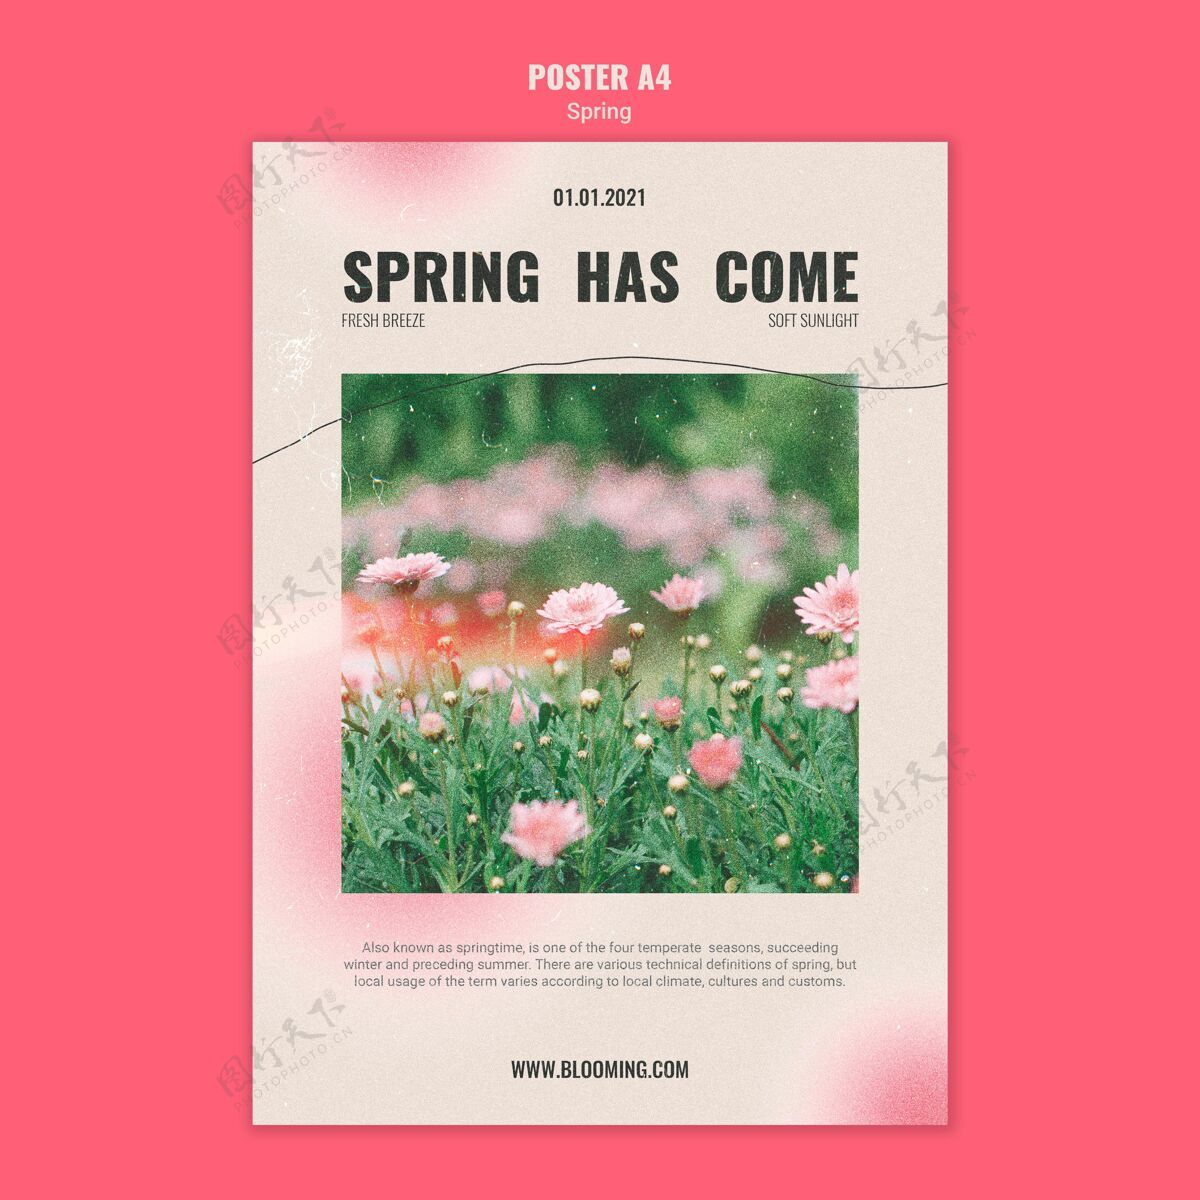 花卉春暖花开的海报模板植被植物印刷模板